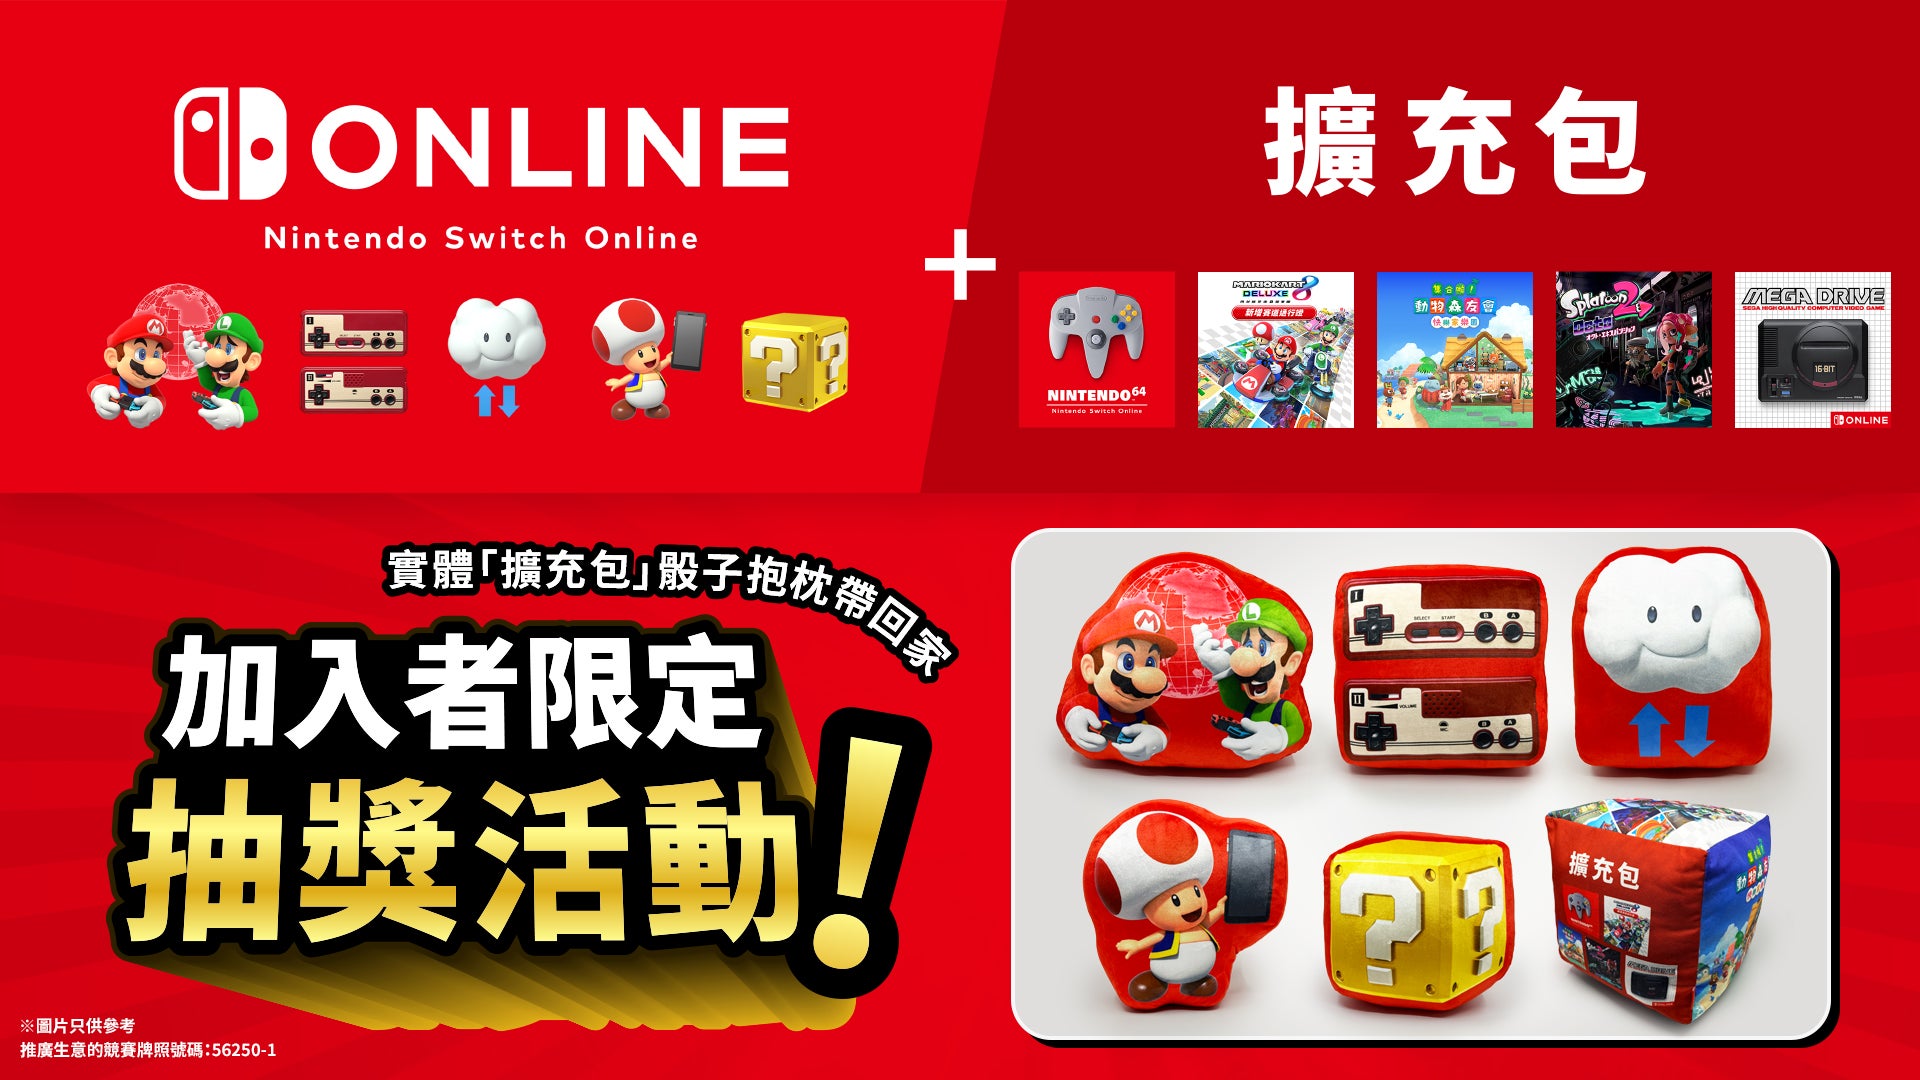 【12月23日更新】【活動快將結束】「Nintendo Switch Online + 擴充包」加入者限定抽獎活動現正接受報名！實體「擴充包」骰子抱枕帶回家 1%title%